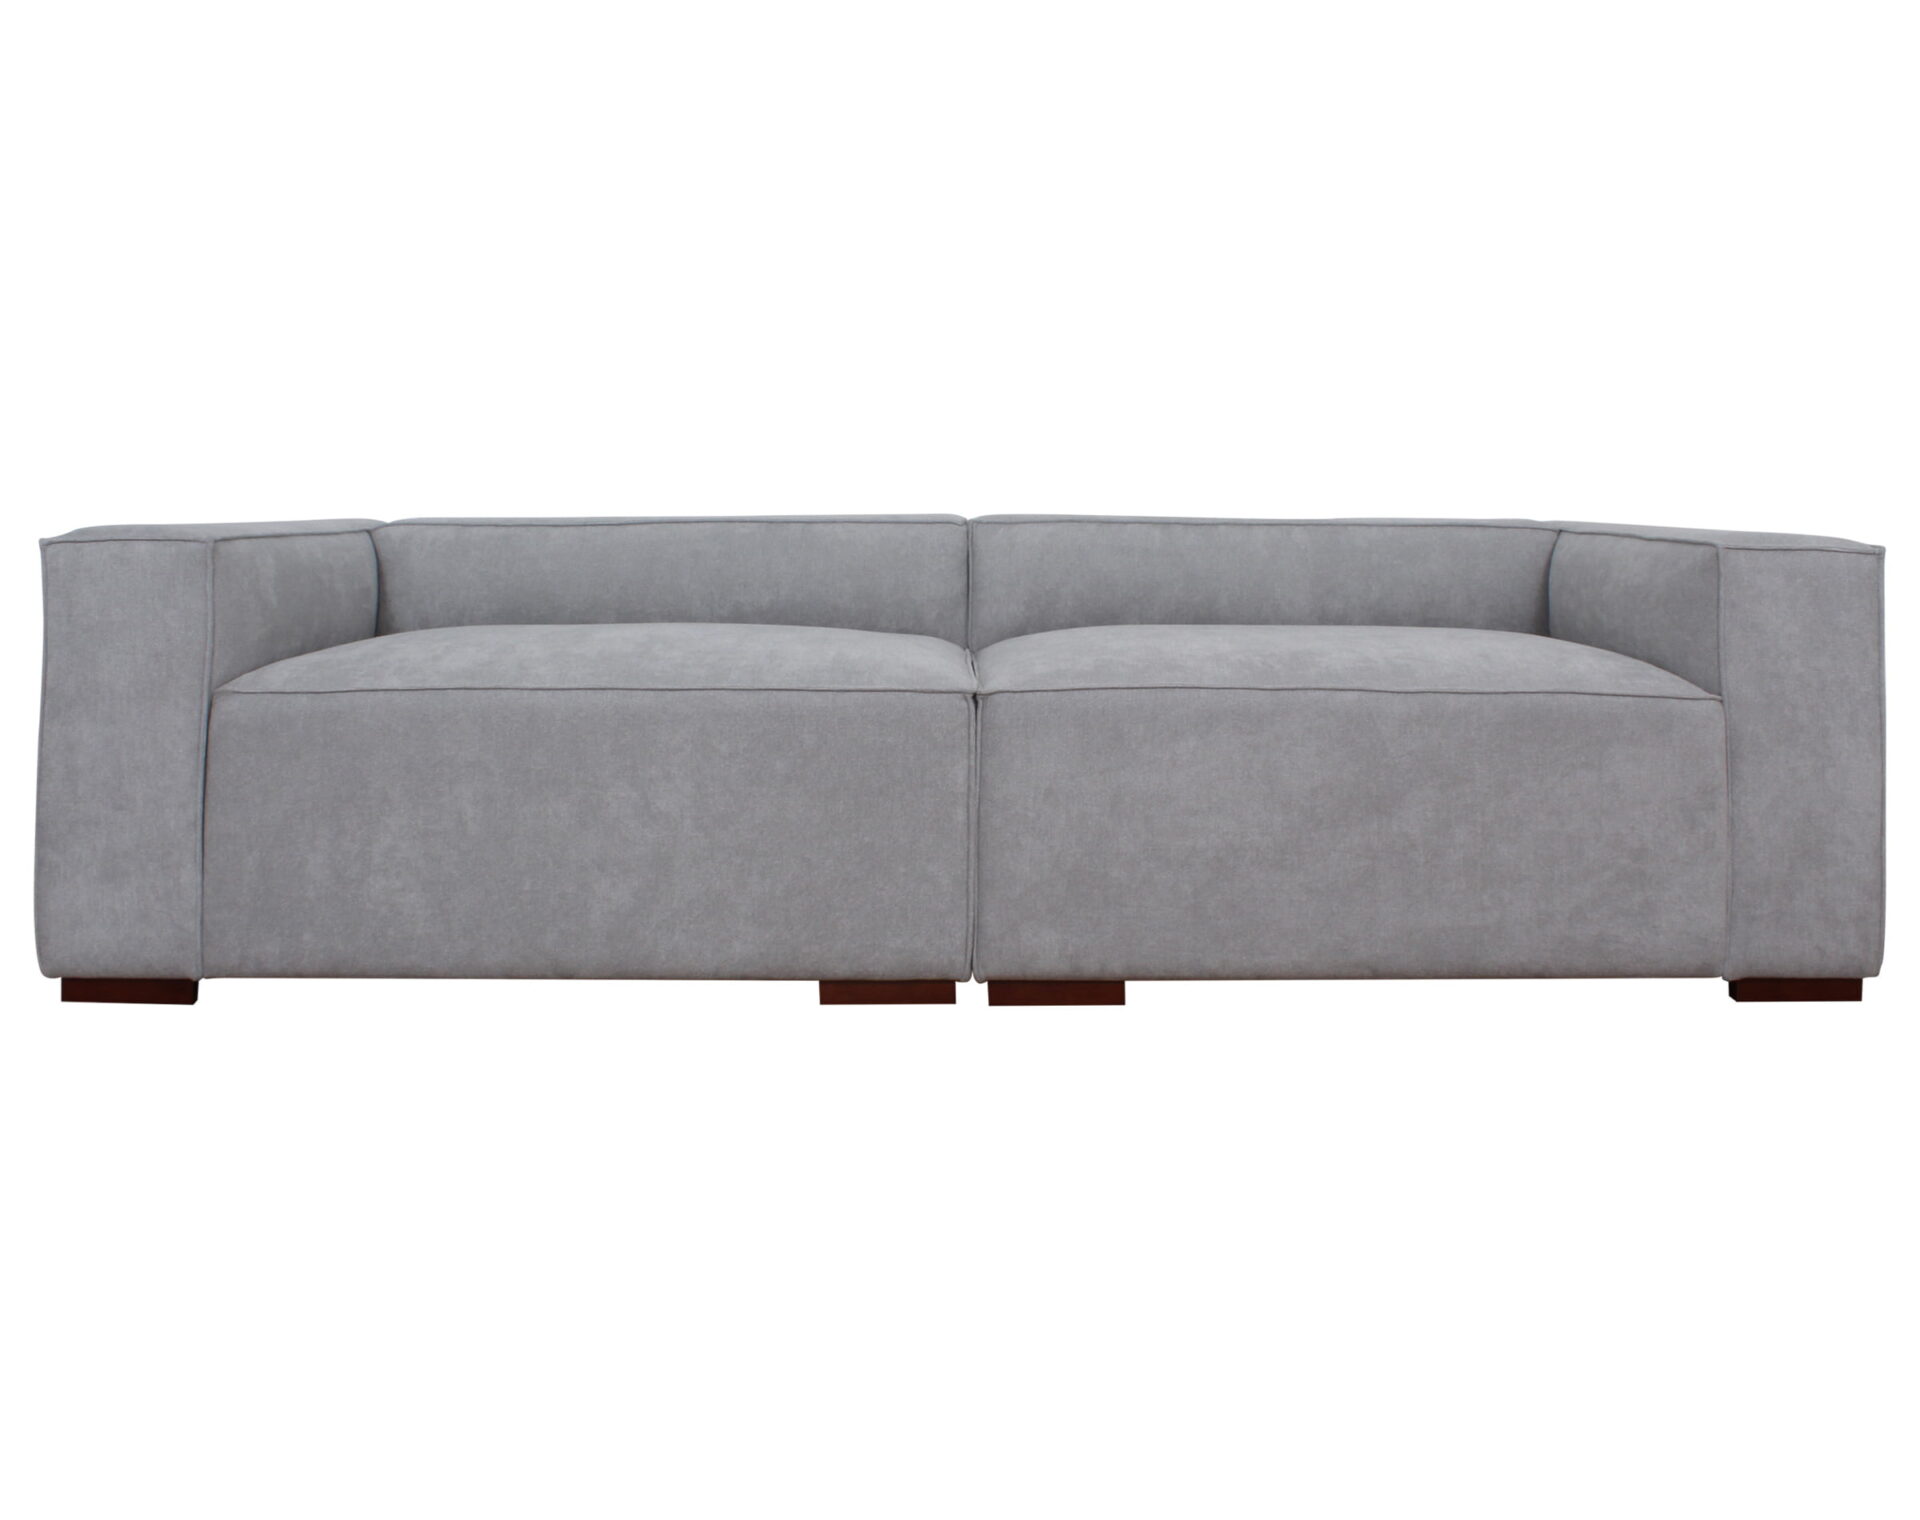 sofa modular pespunte dresde frente